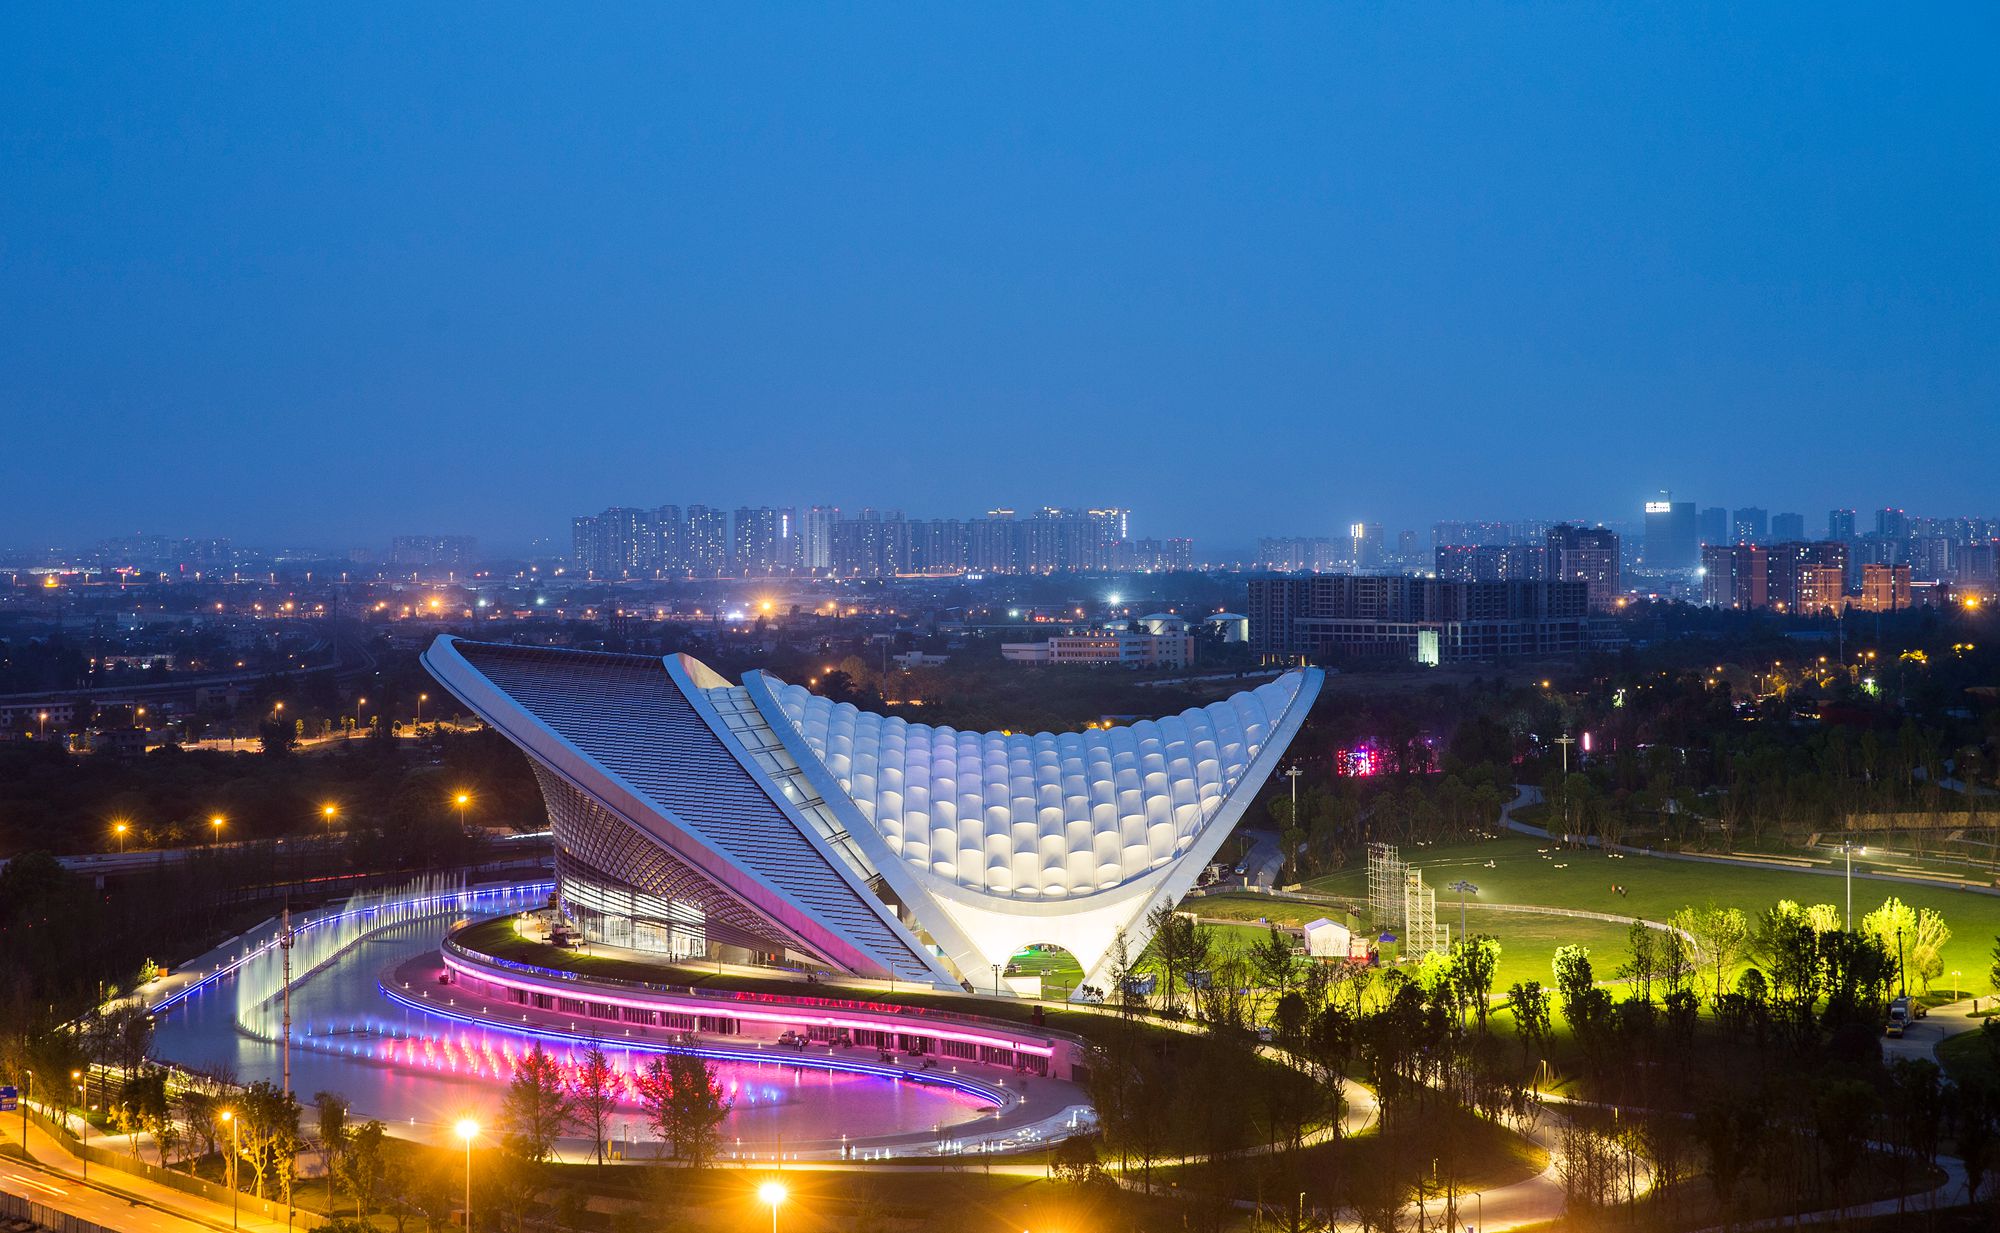 成都露天音乐公园：项目是中国唯一一座以露天音乐广场为主题的地标性城市公园，占地592亩、39.5万平方米，可以容纳4.7万人。_副本.jpg